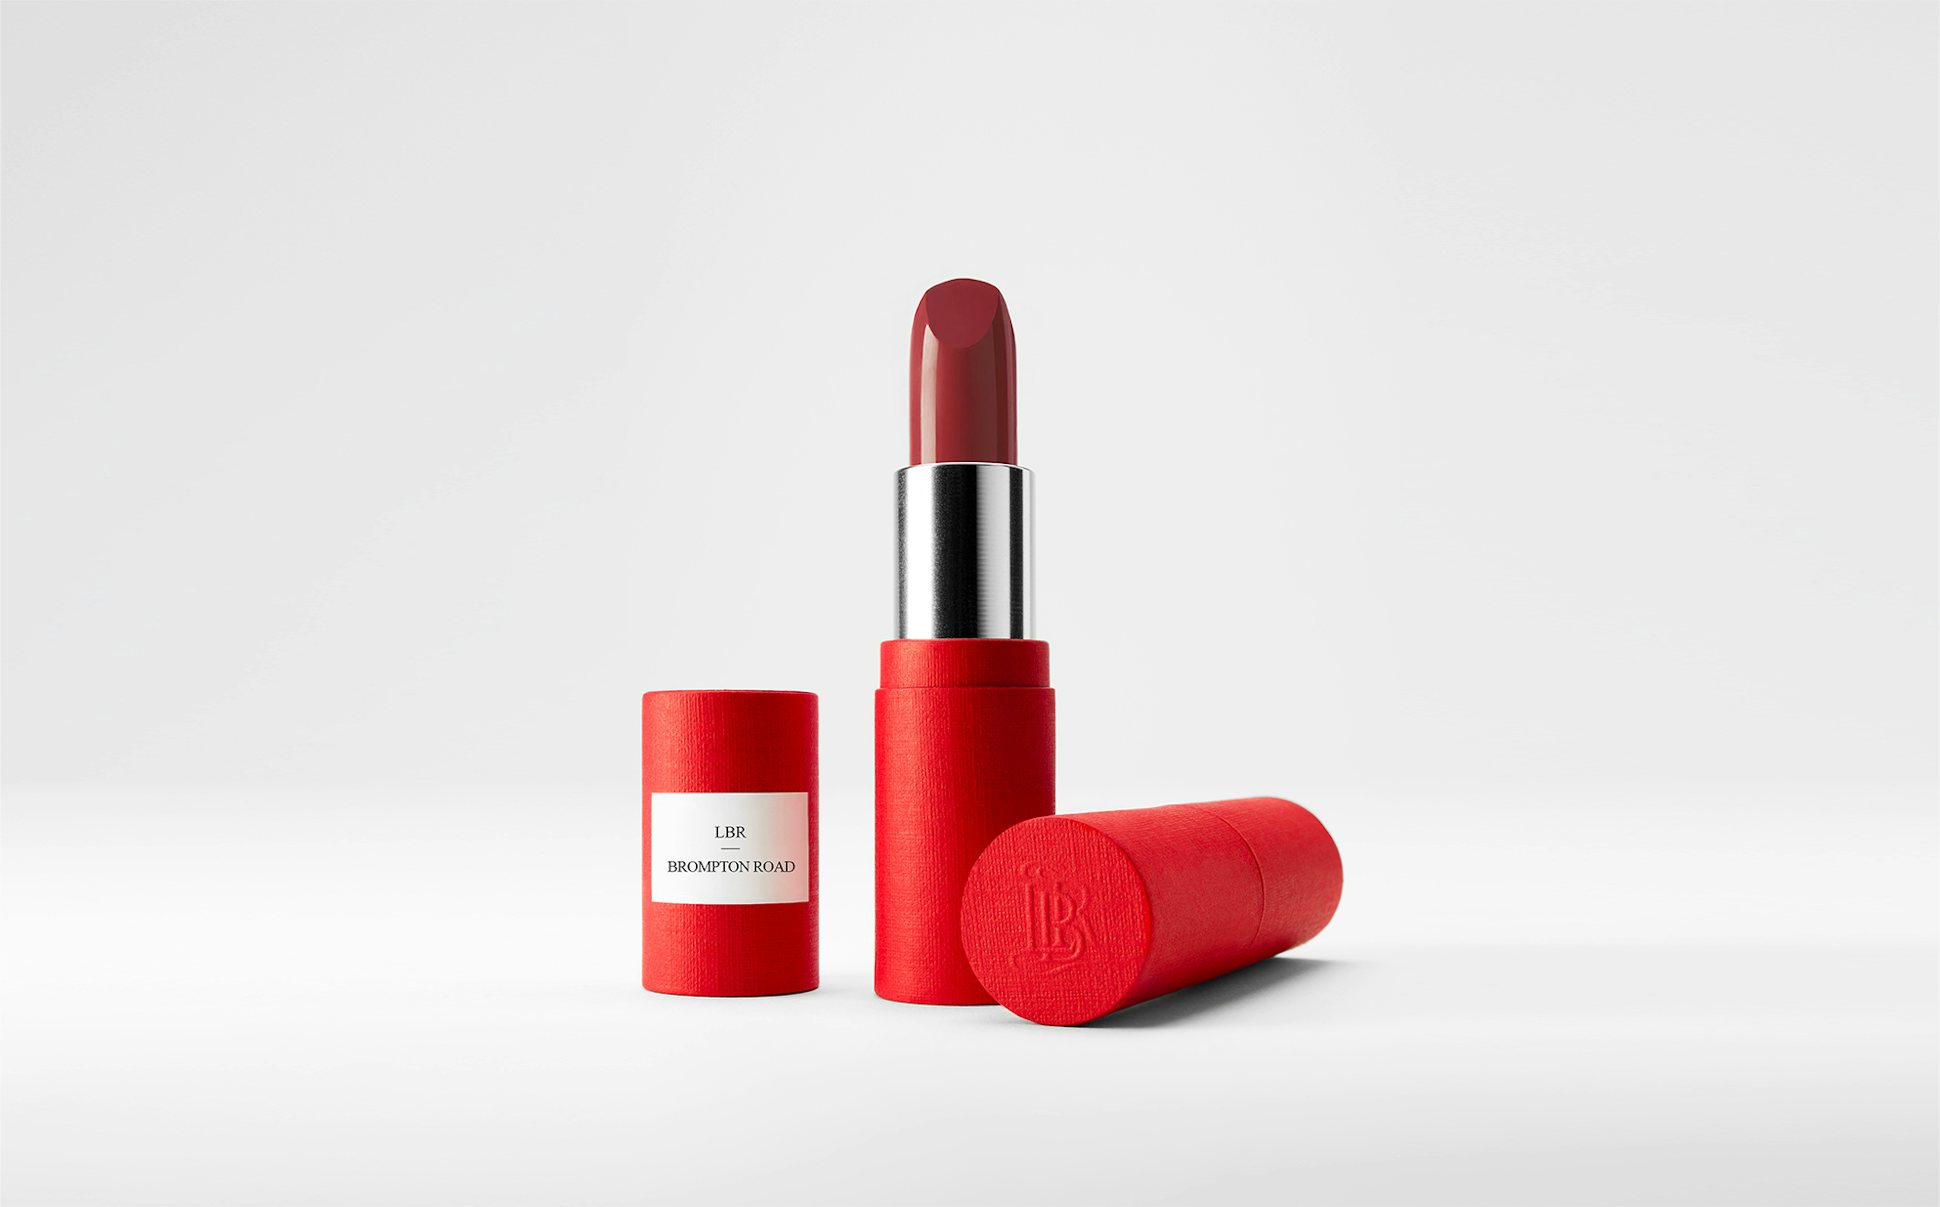 La bouche rouge Brompton Road lipstick in the red paper case